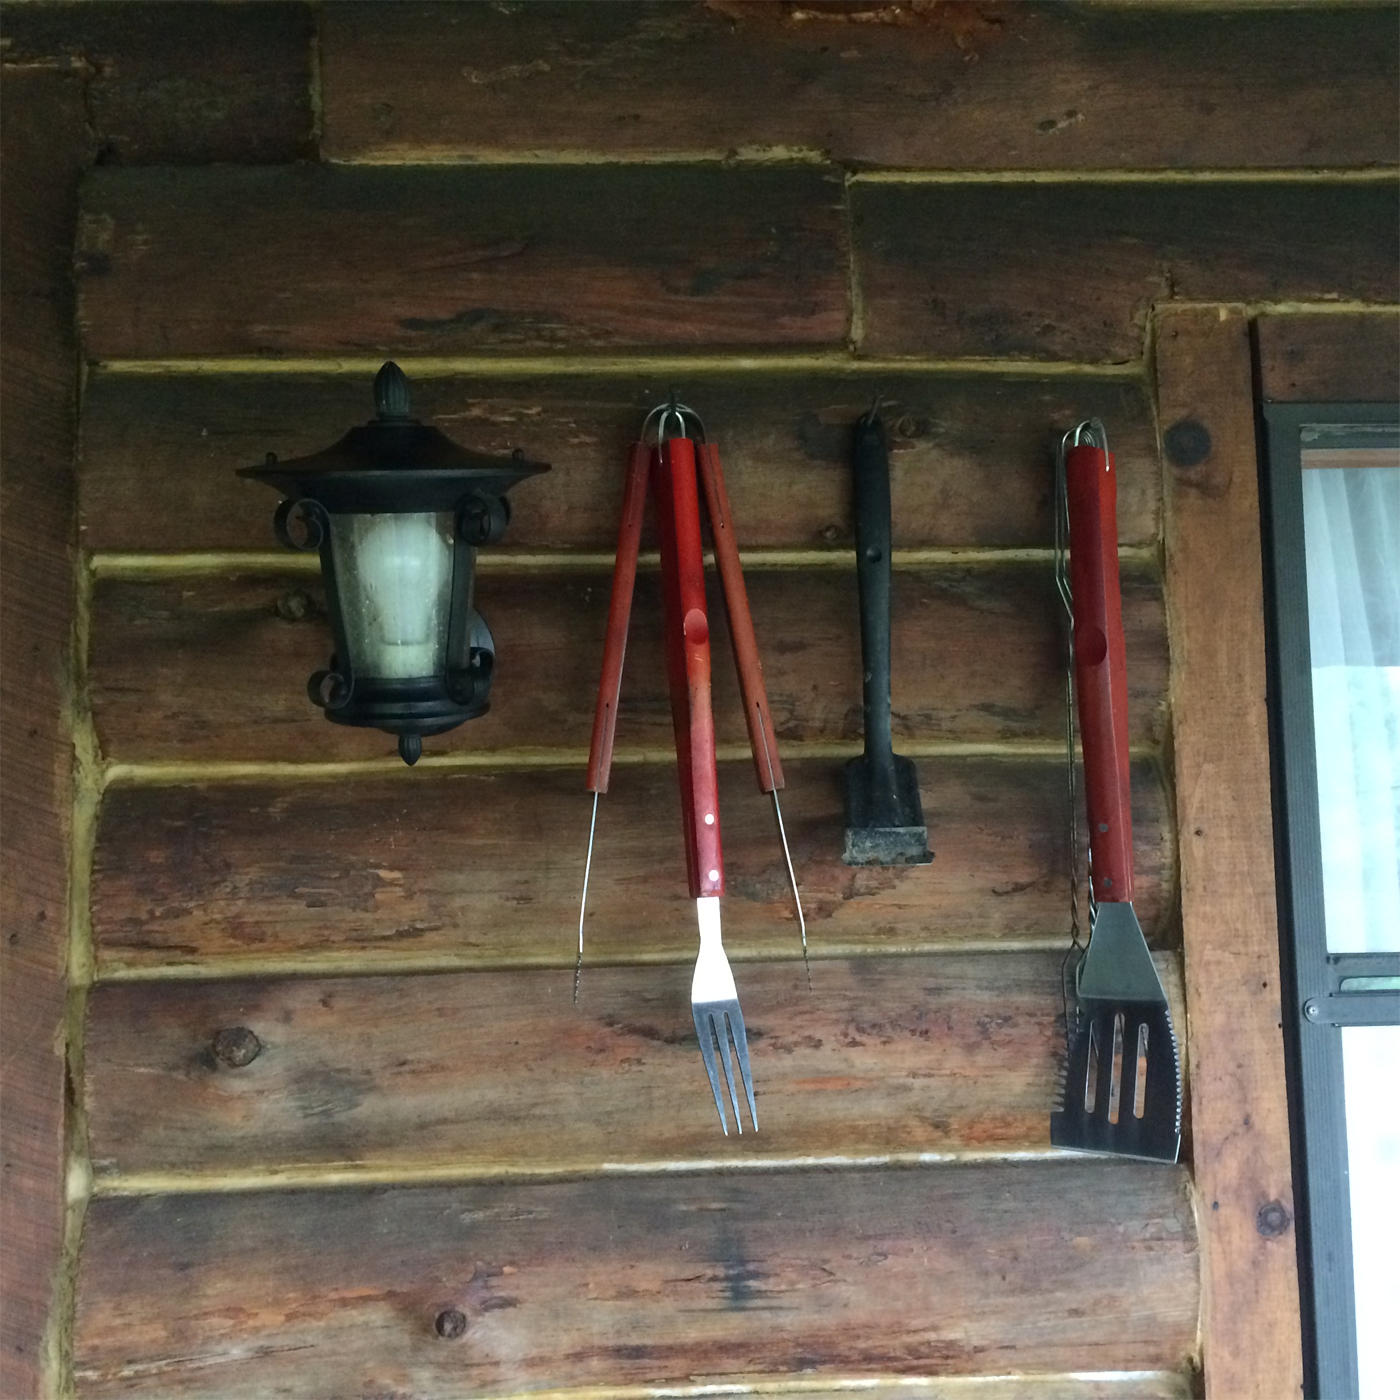 porch, grilling tools